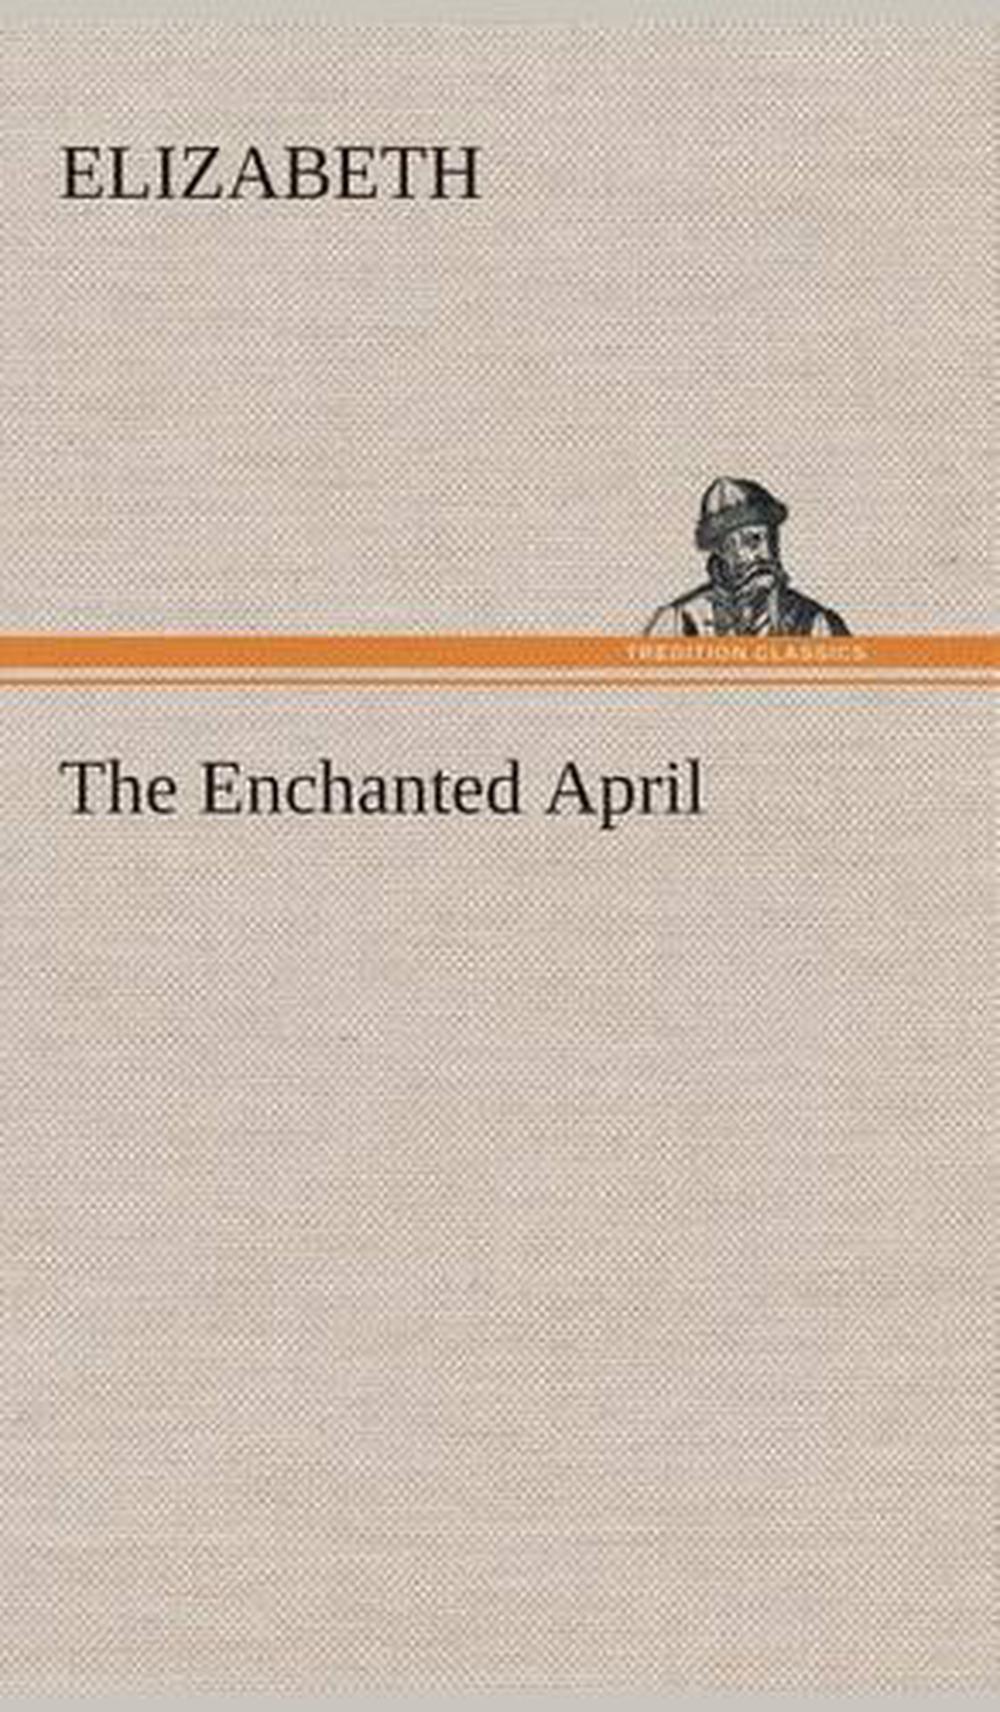 an enchanted april book